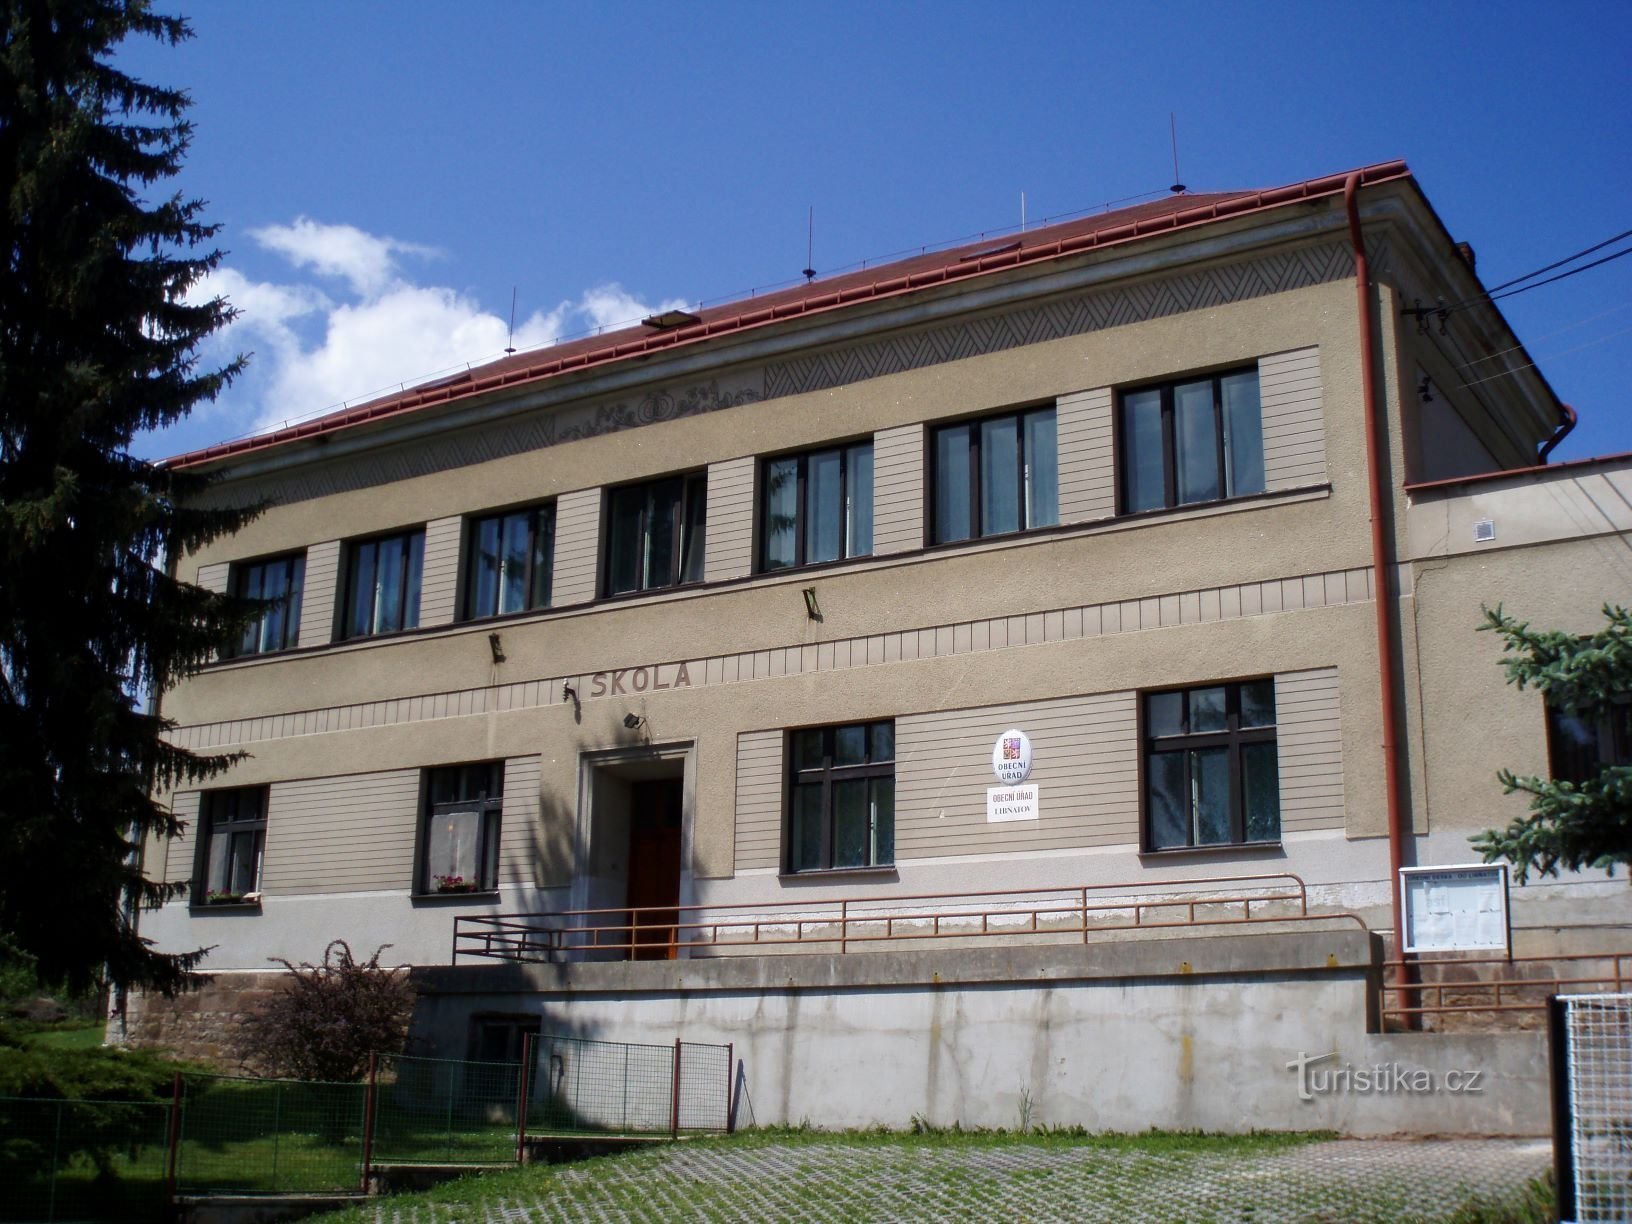 Das ursprüngliche Erscheinungsbild des heutigen Gemeindeamtes (Libňatov, 12.5.2009)